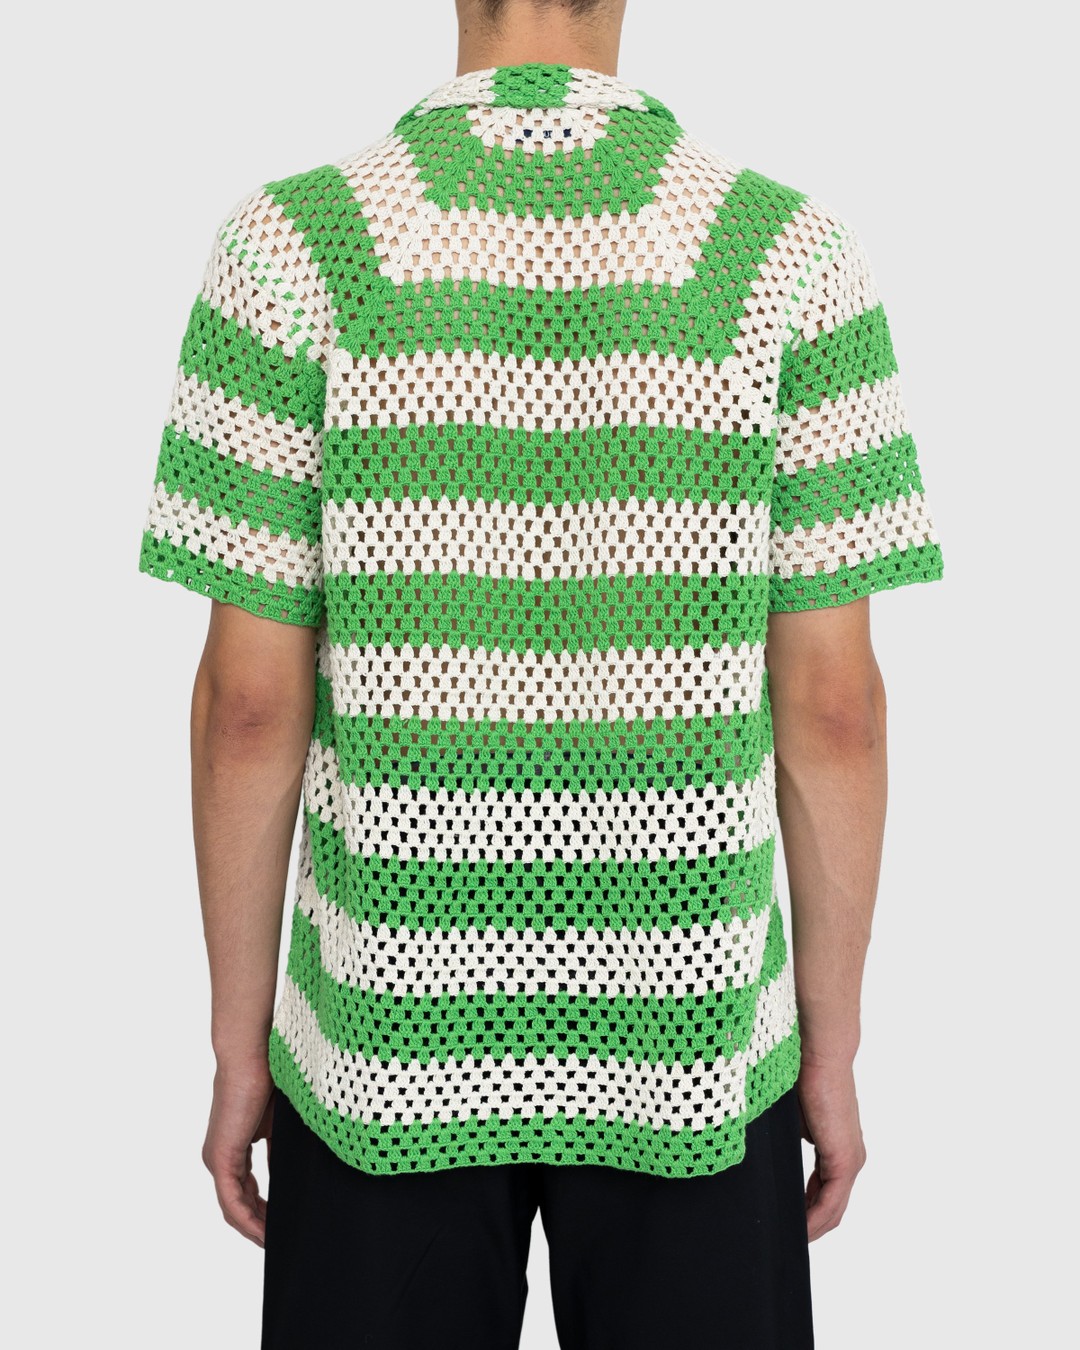 Bode – Crochet Shirt Green | Highsnobiety Shop